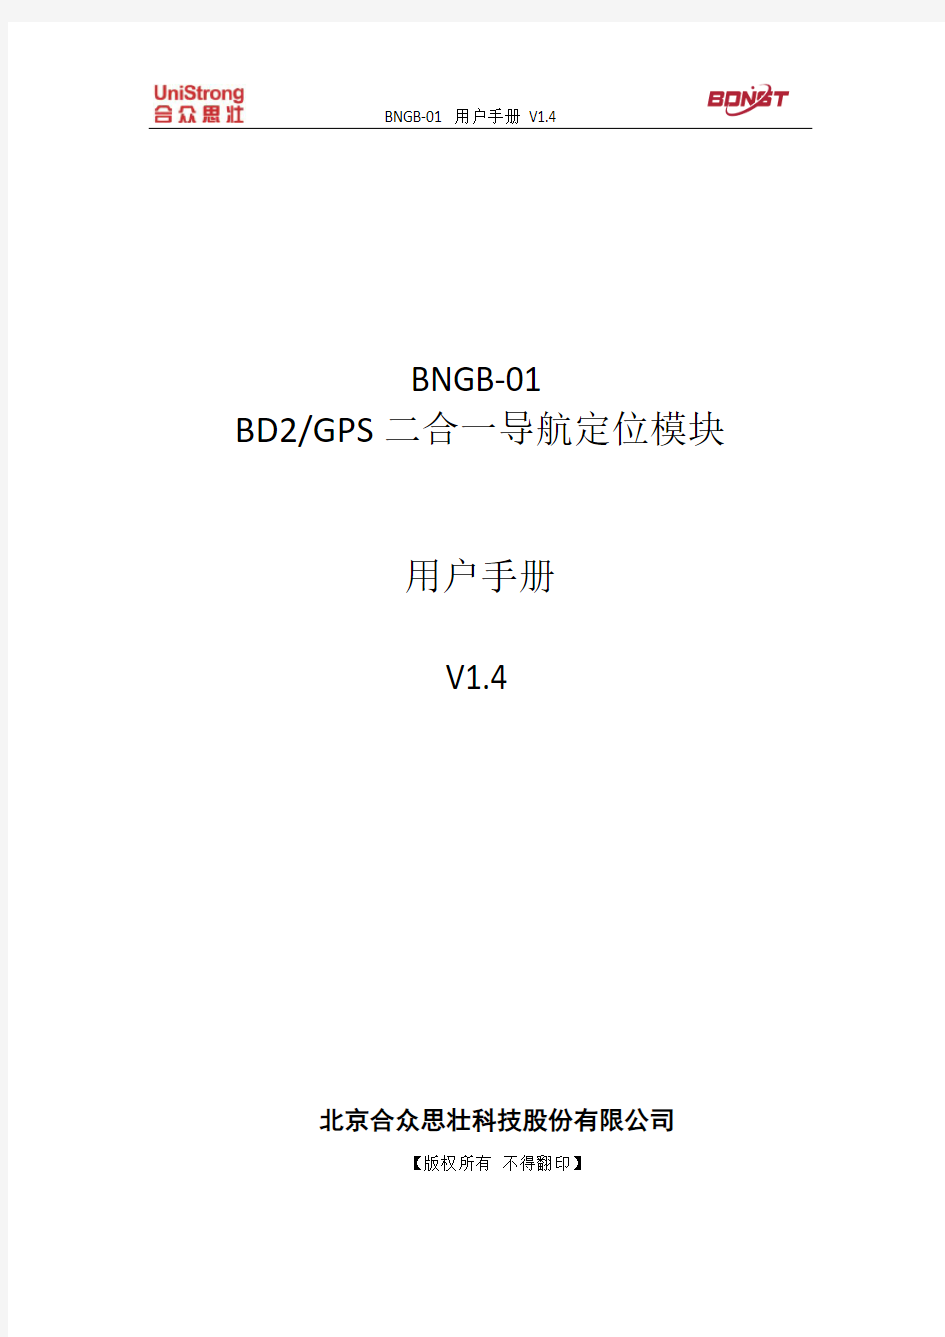 北斗二代+GPS定位 模块BNGB-01 用户手册_v1.4